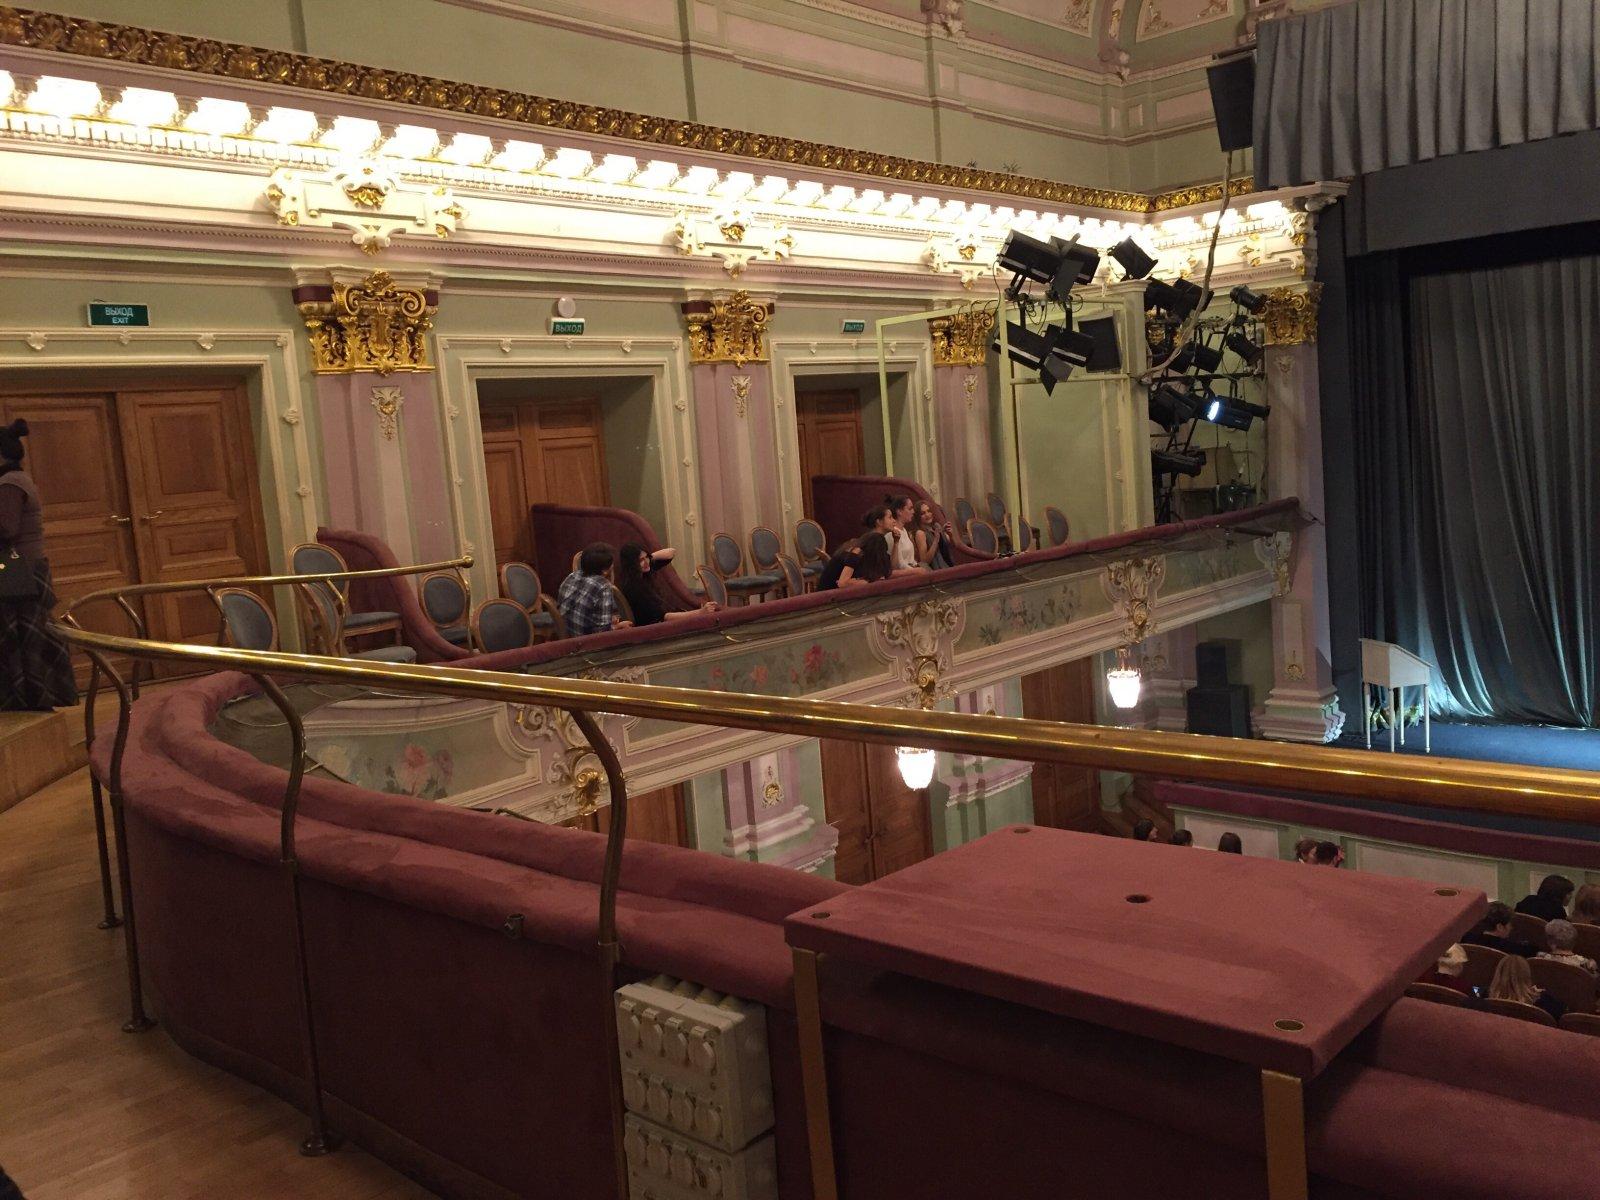 Театр имени комиссаржевской